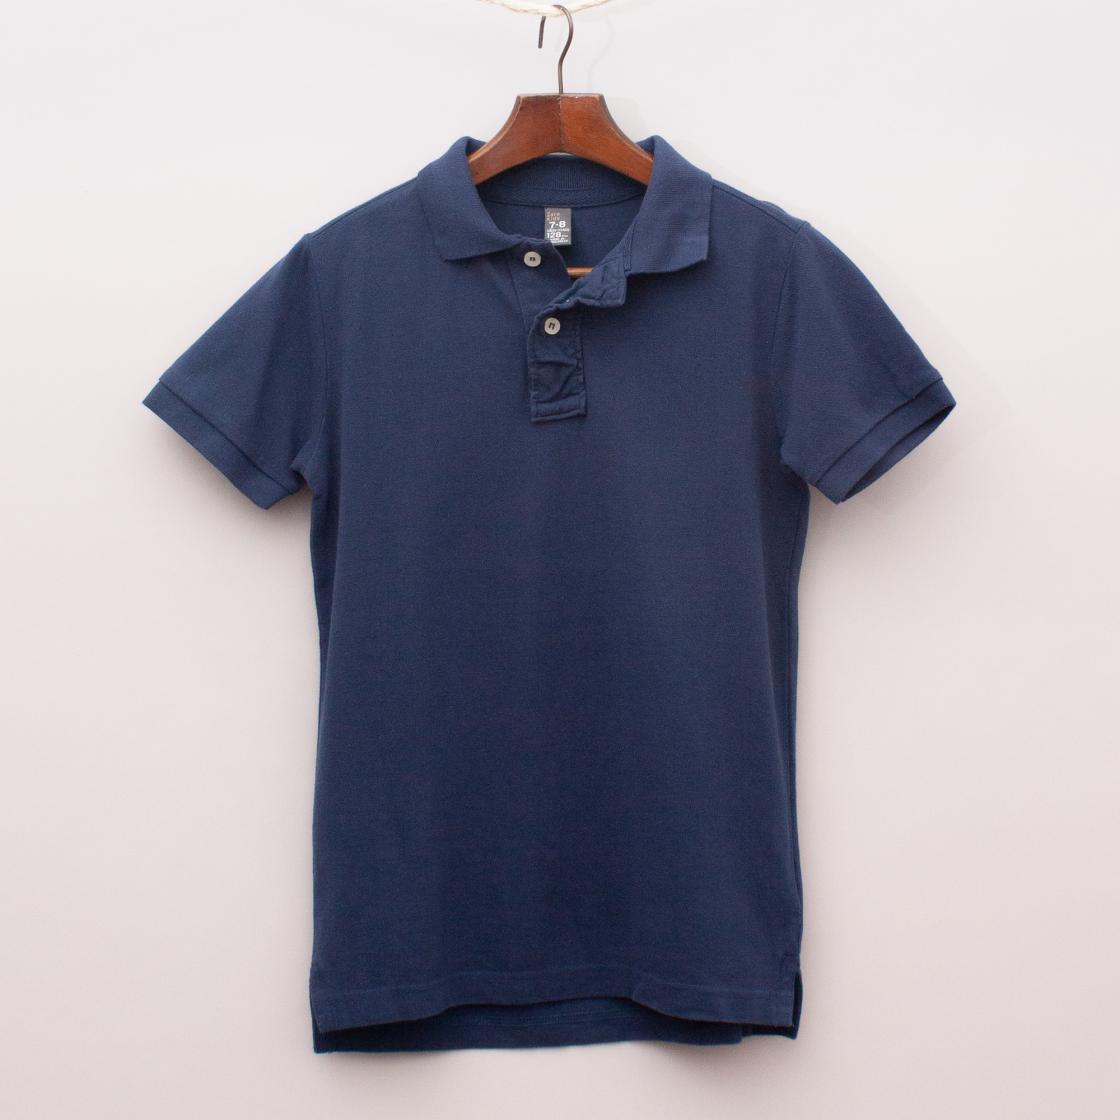 Zara Navy Blue Polo Shirt